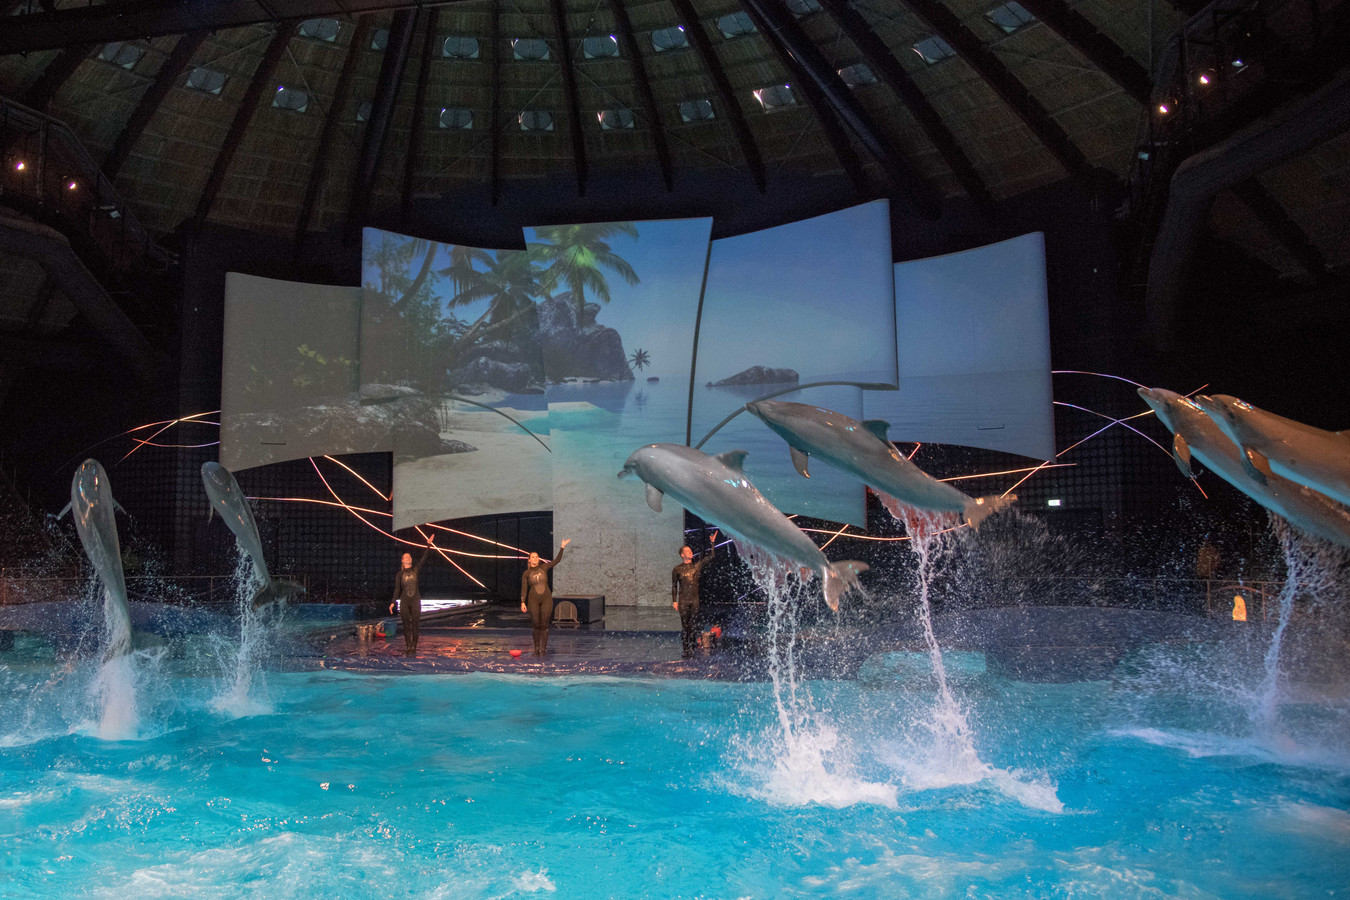 Het Dolfinarium maakt een einde aan de 'circusachtige shows'. De sprongen, zoals te zien op de foto, blijven wel onderdeel van de voorstelling. Dat is namelijk een 'natuurlijke gedraging' van een dolfijn.